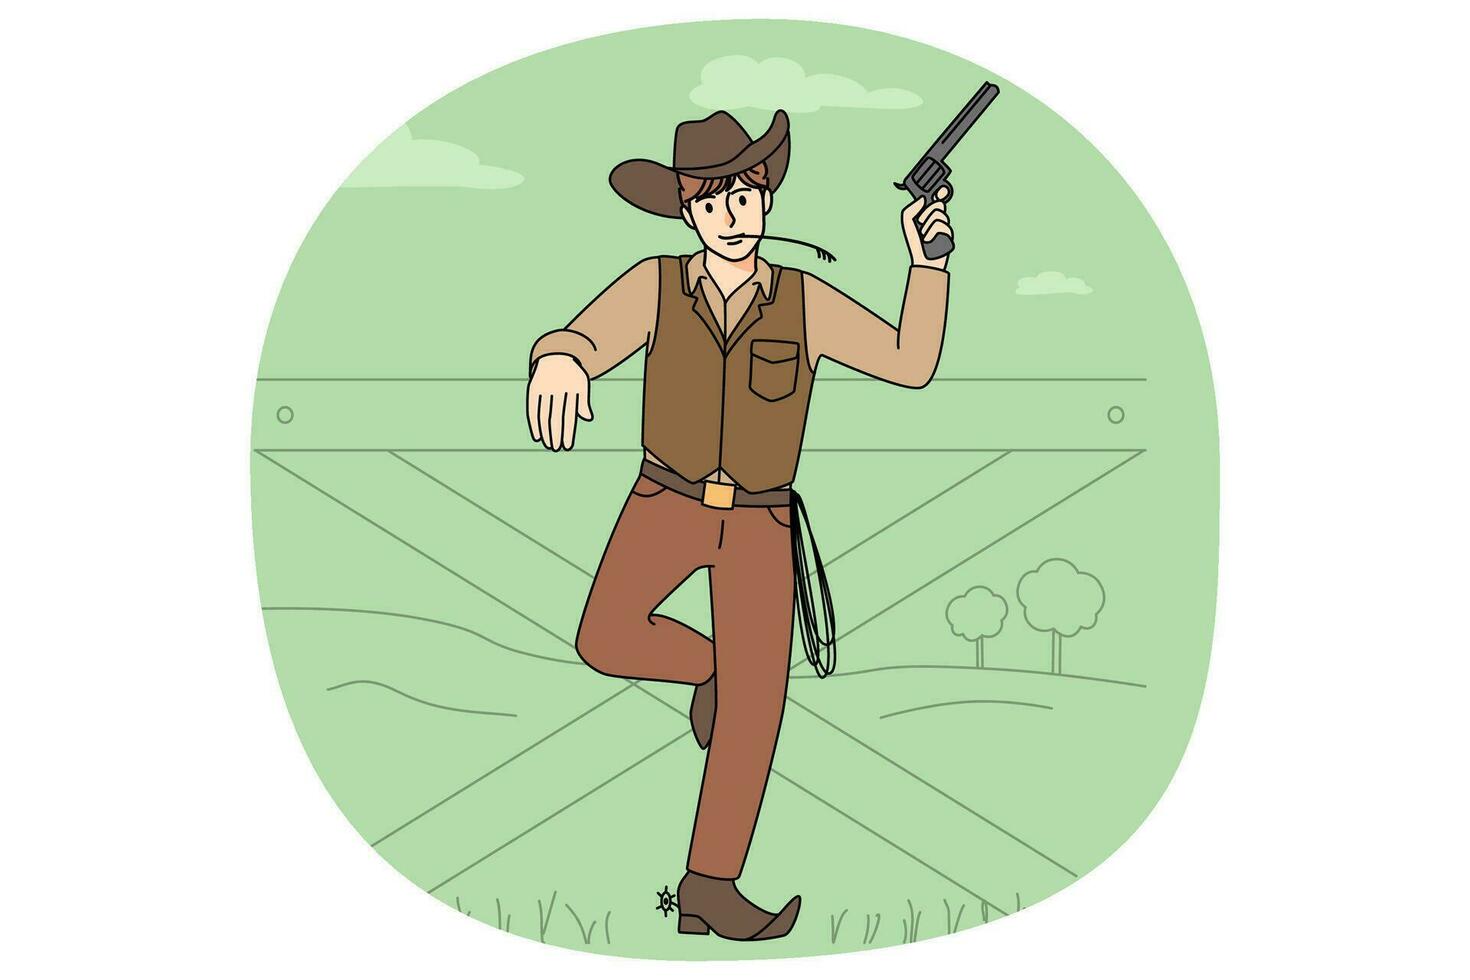 Masculin cow-boy dans costume posant avec revolver près clôture. homme bandit sur sauvage Ouest. occidental thème concept. vecteur illustration.